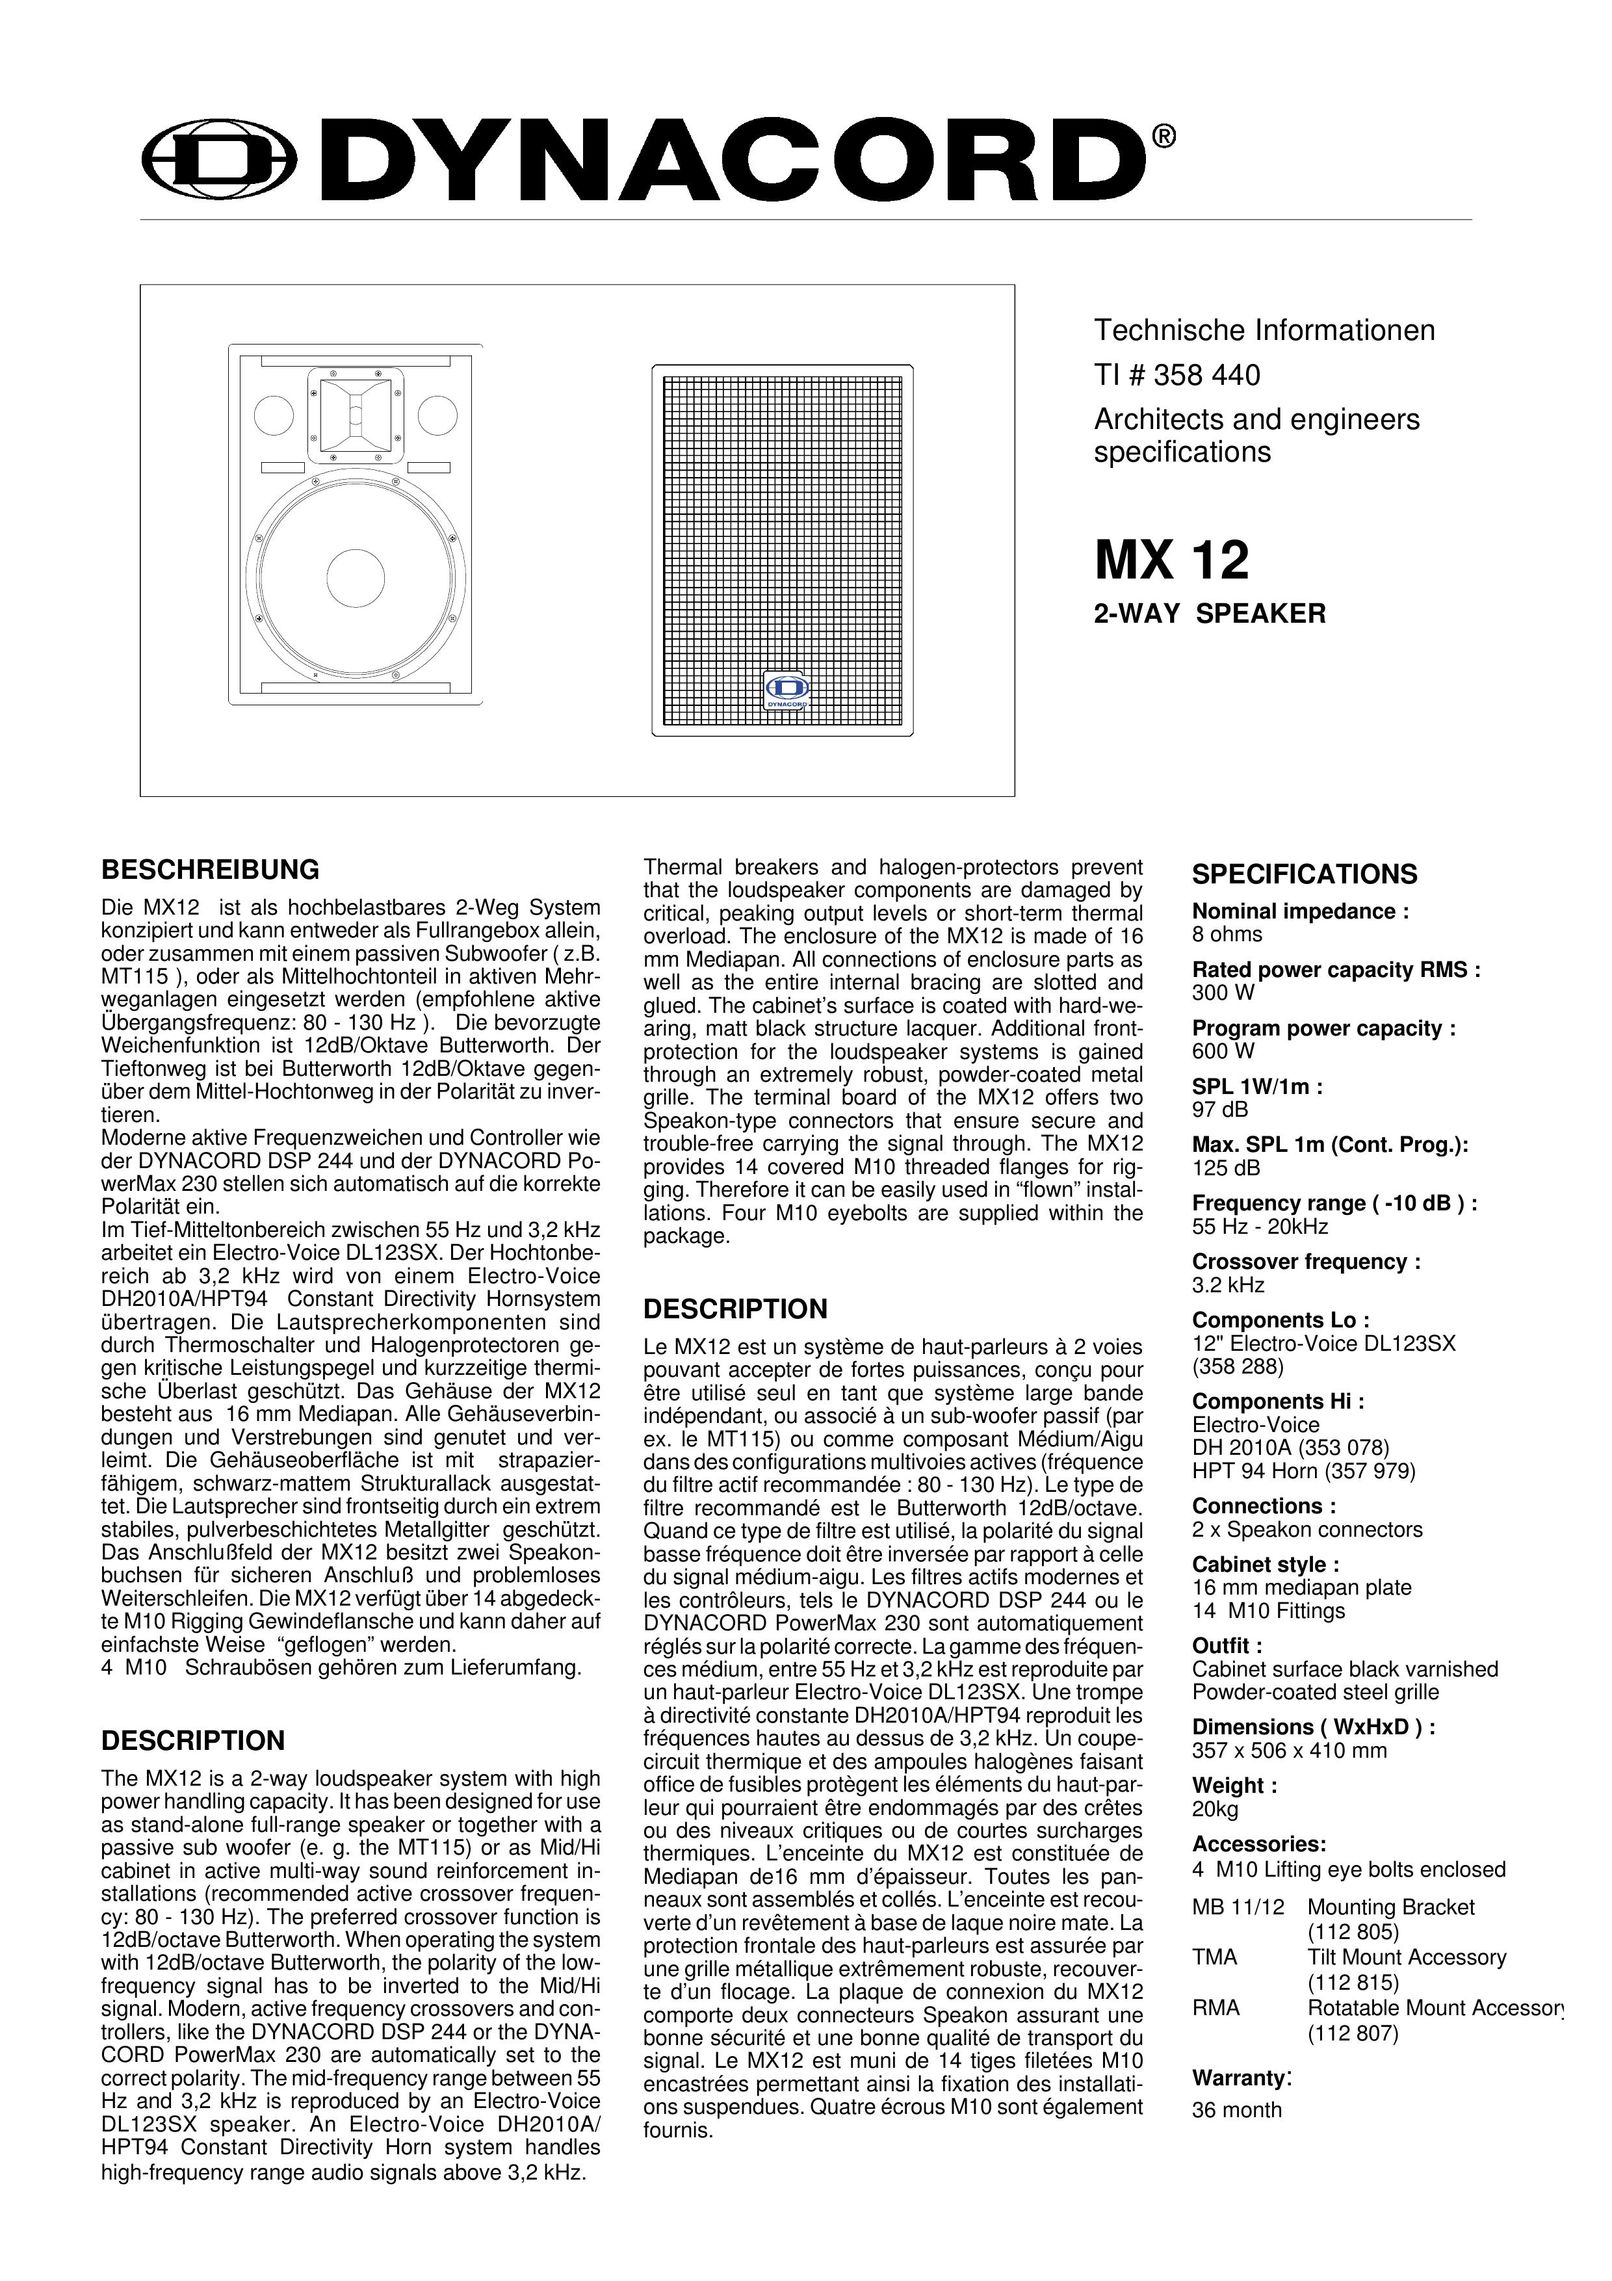 Dynacord MX 12 Speaker User Manual